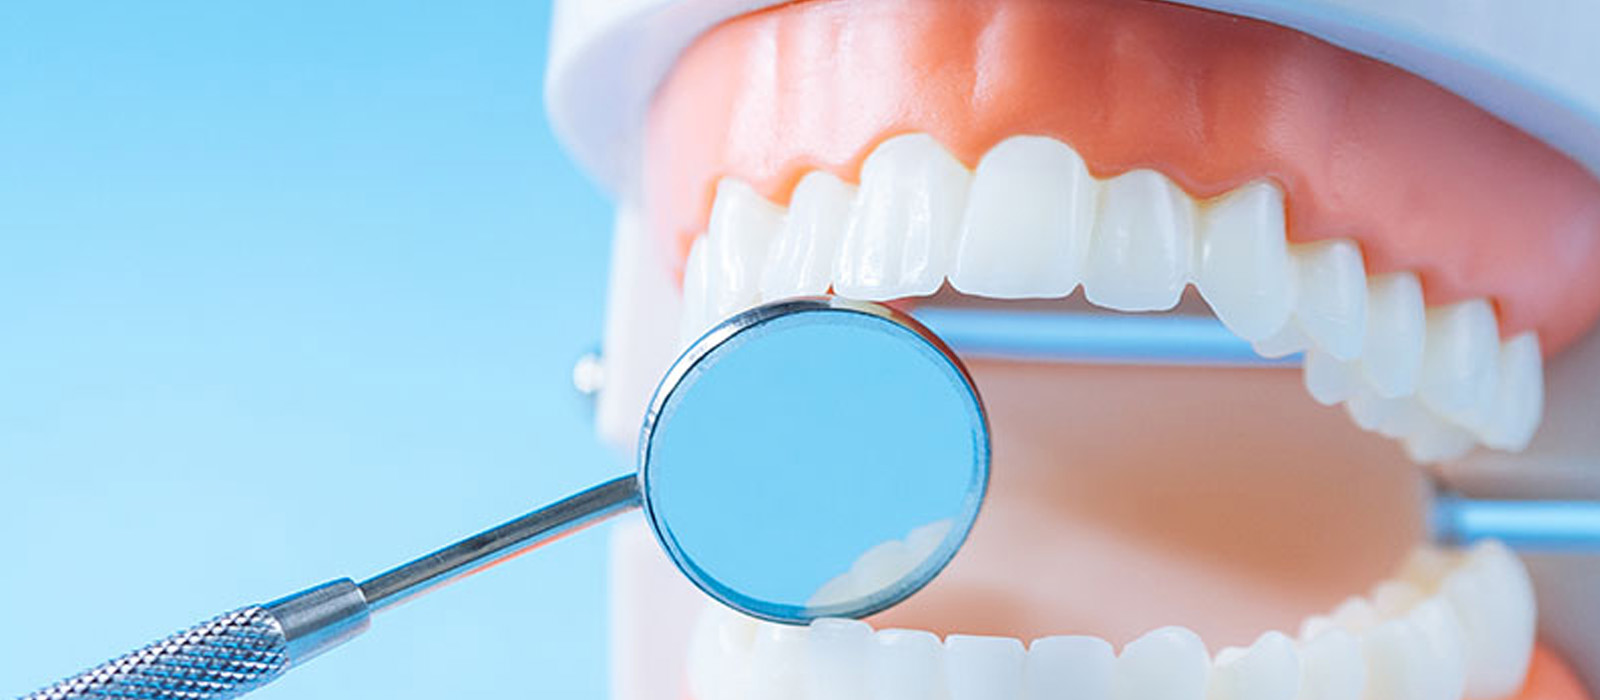 歯周病と全身のさまざまな健康との関連